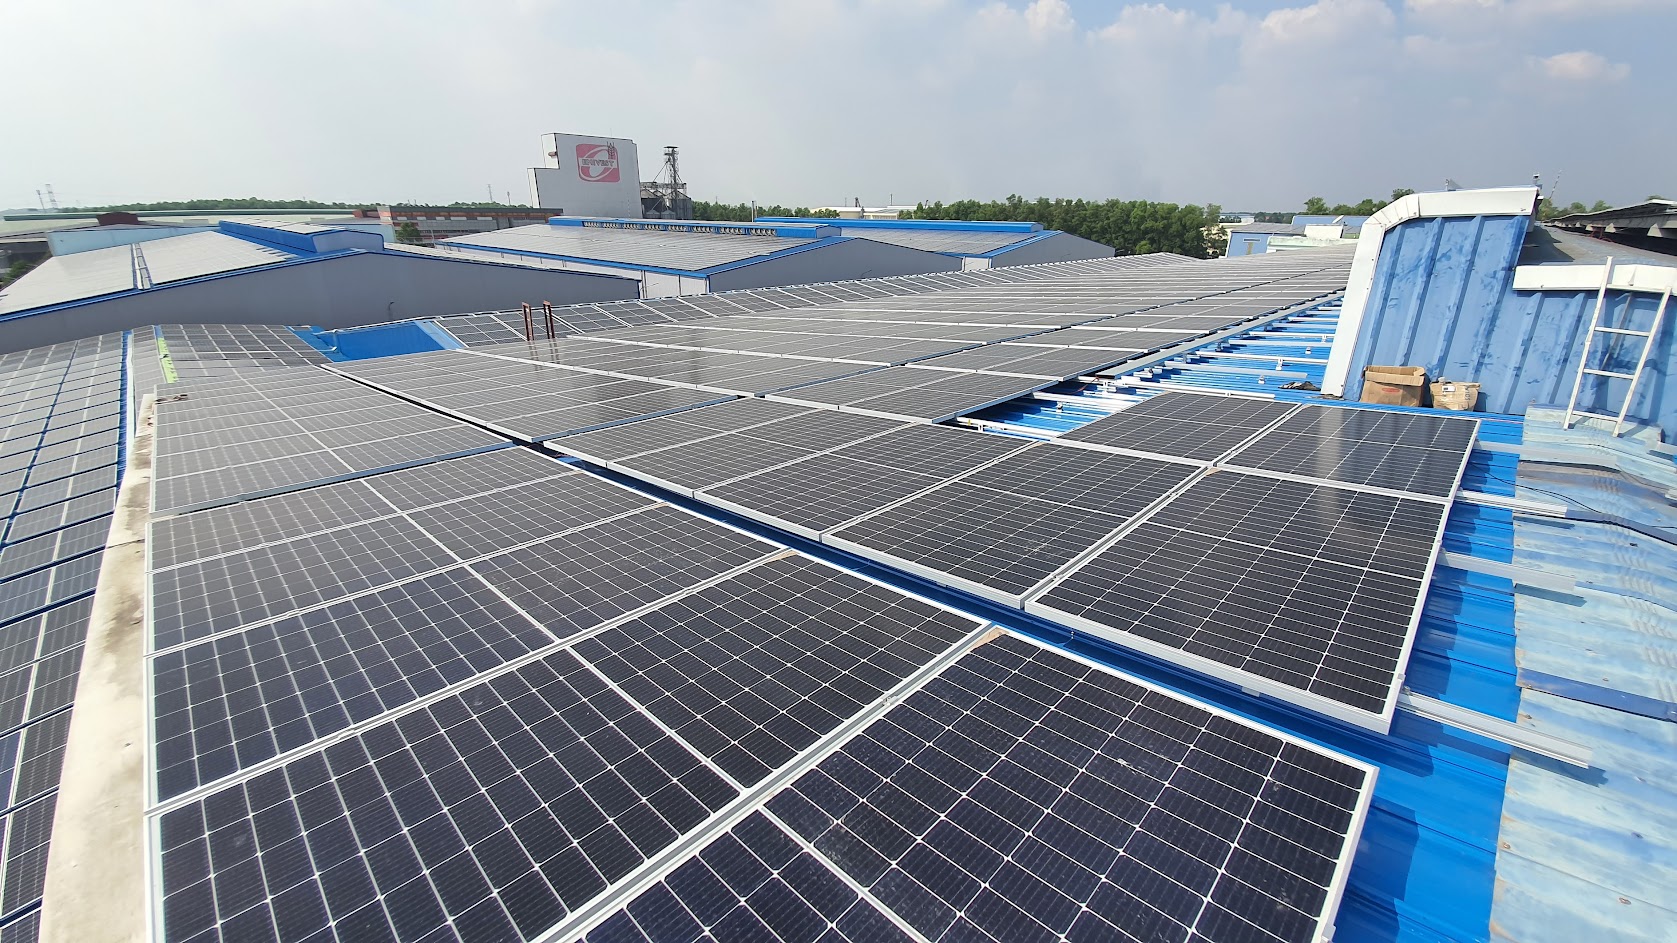 HỆ THỐNG ĐIỆN MẶT TRỜI HÒA LƯỚI 2MWp - Dự án sử dụng 4.496 tấm pin năng lượng mặt trời ANTARIS GERMANY - MONO 445Wp hiệu suất cao